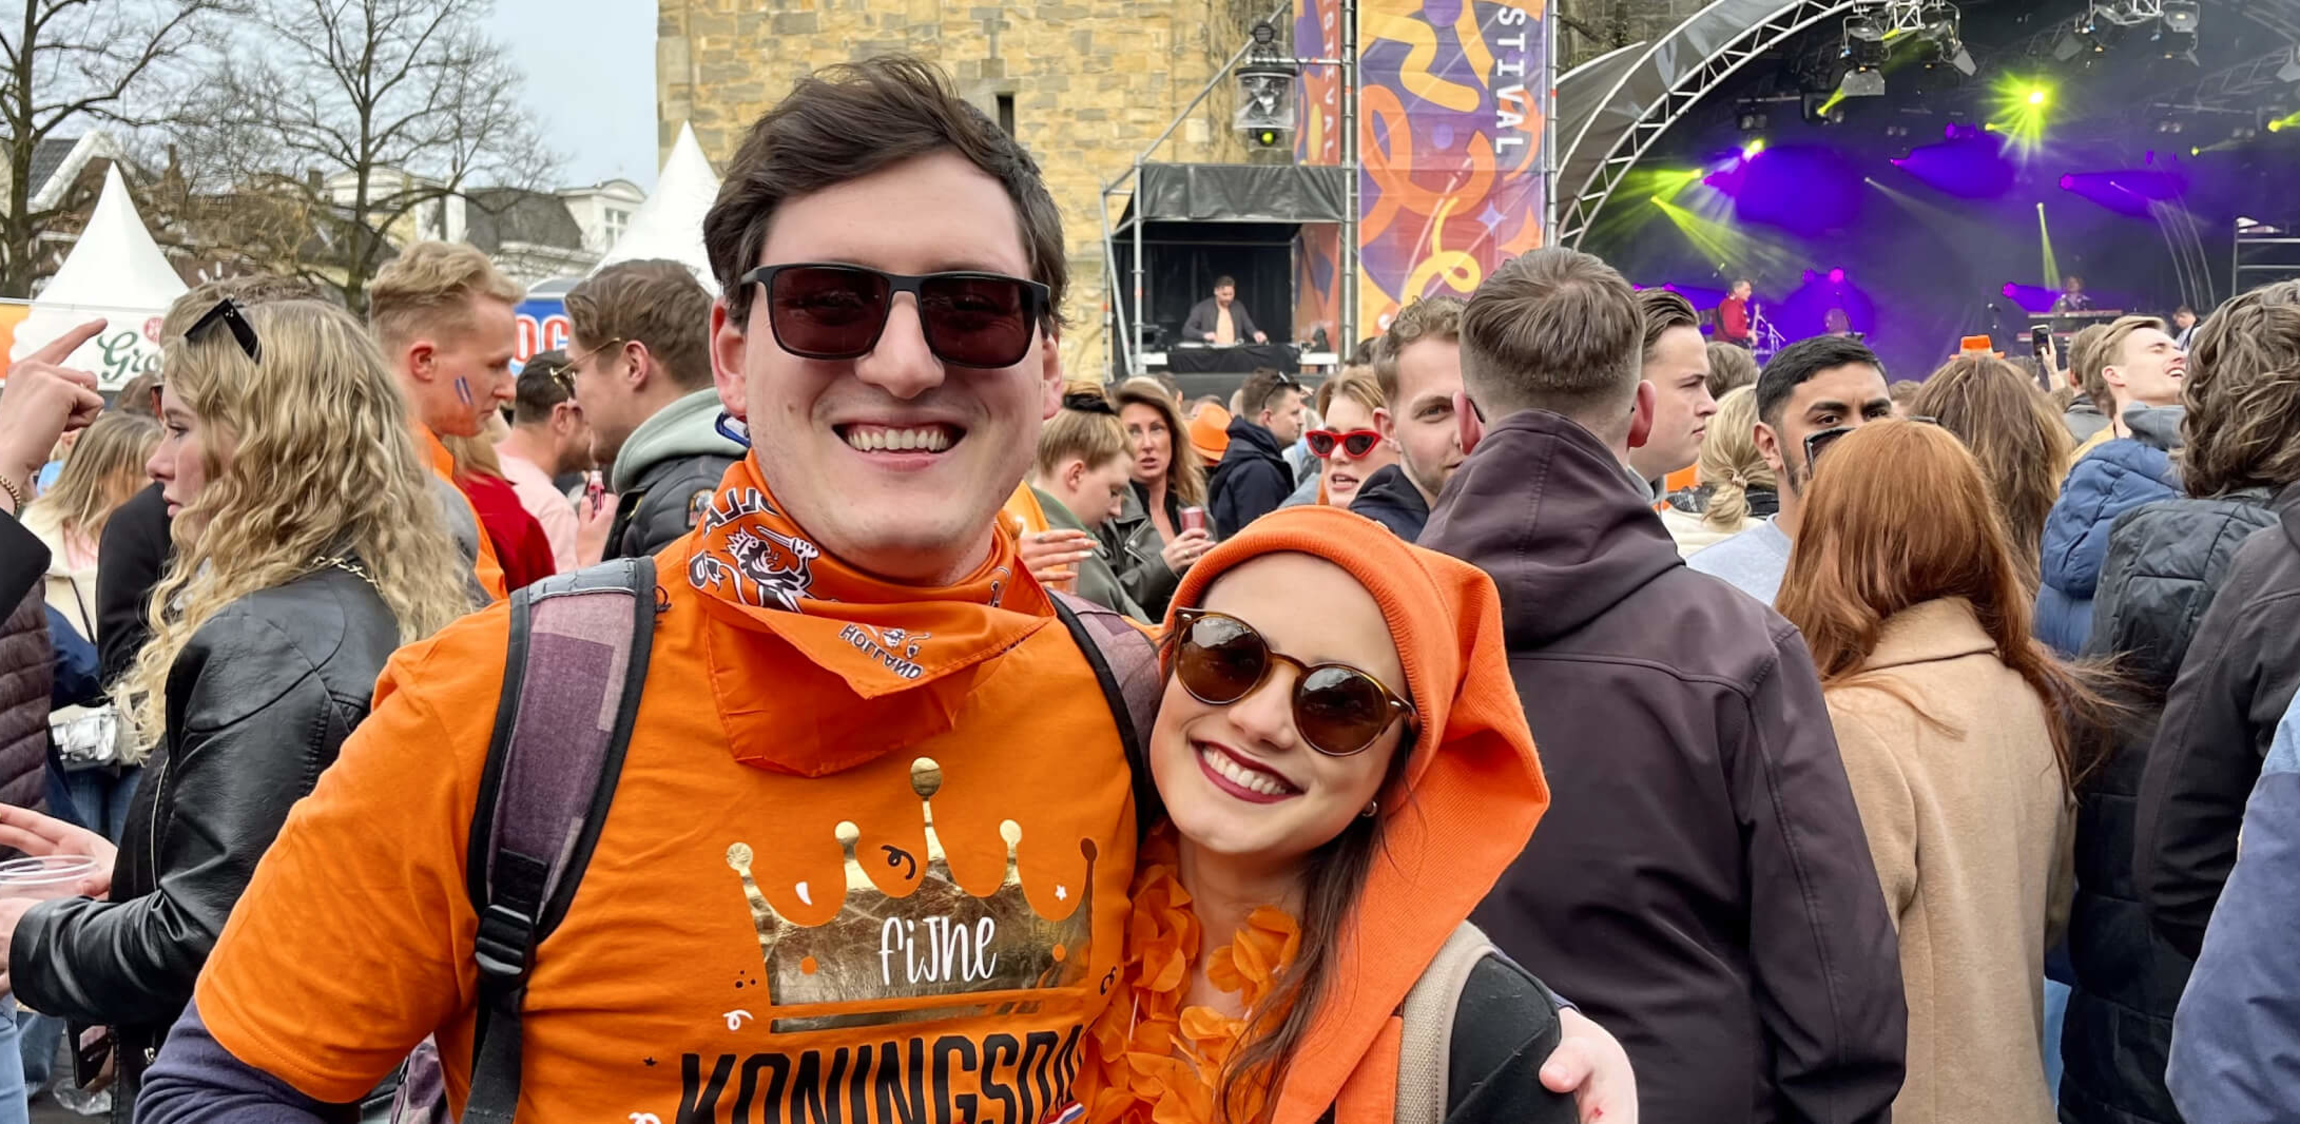 Gabriela Chiquetto met haar man in Enschede tijdens Koningsdag in het oranje